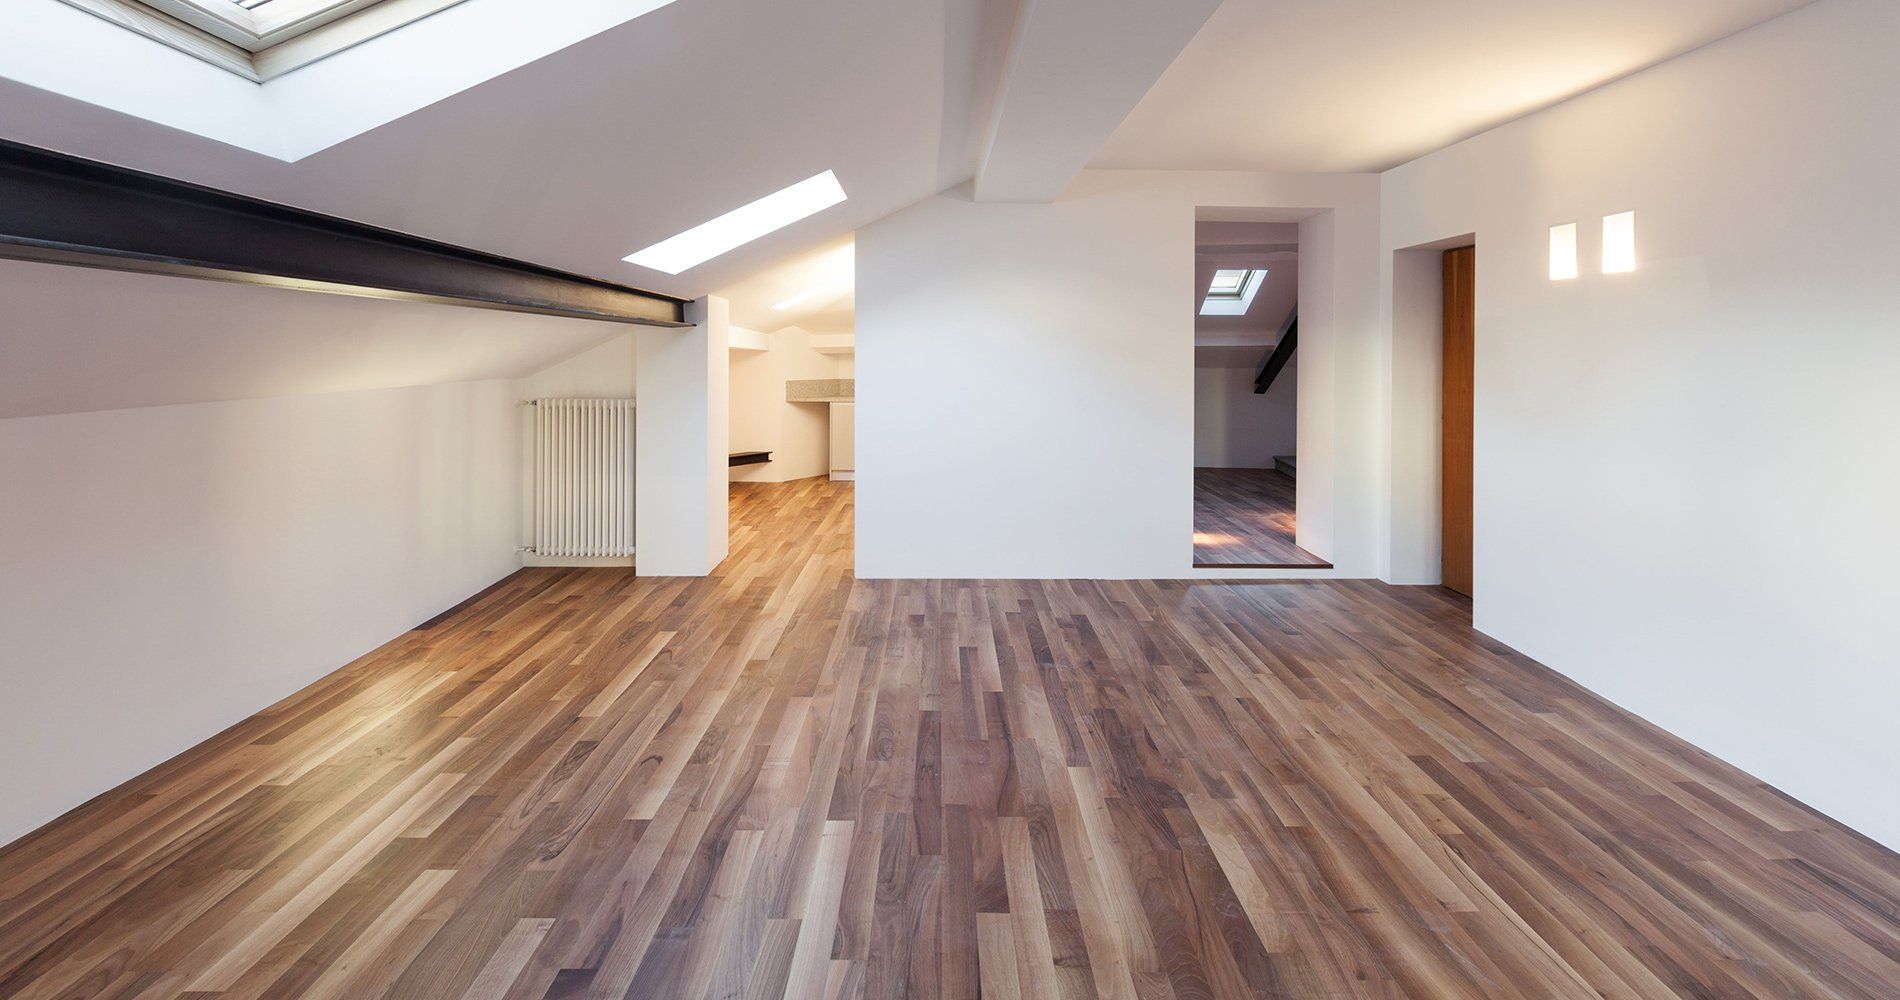 54 Marble Hardwood floors installers boise idaho Trend in 2021